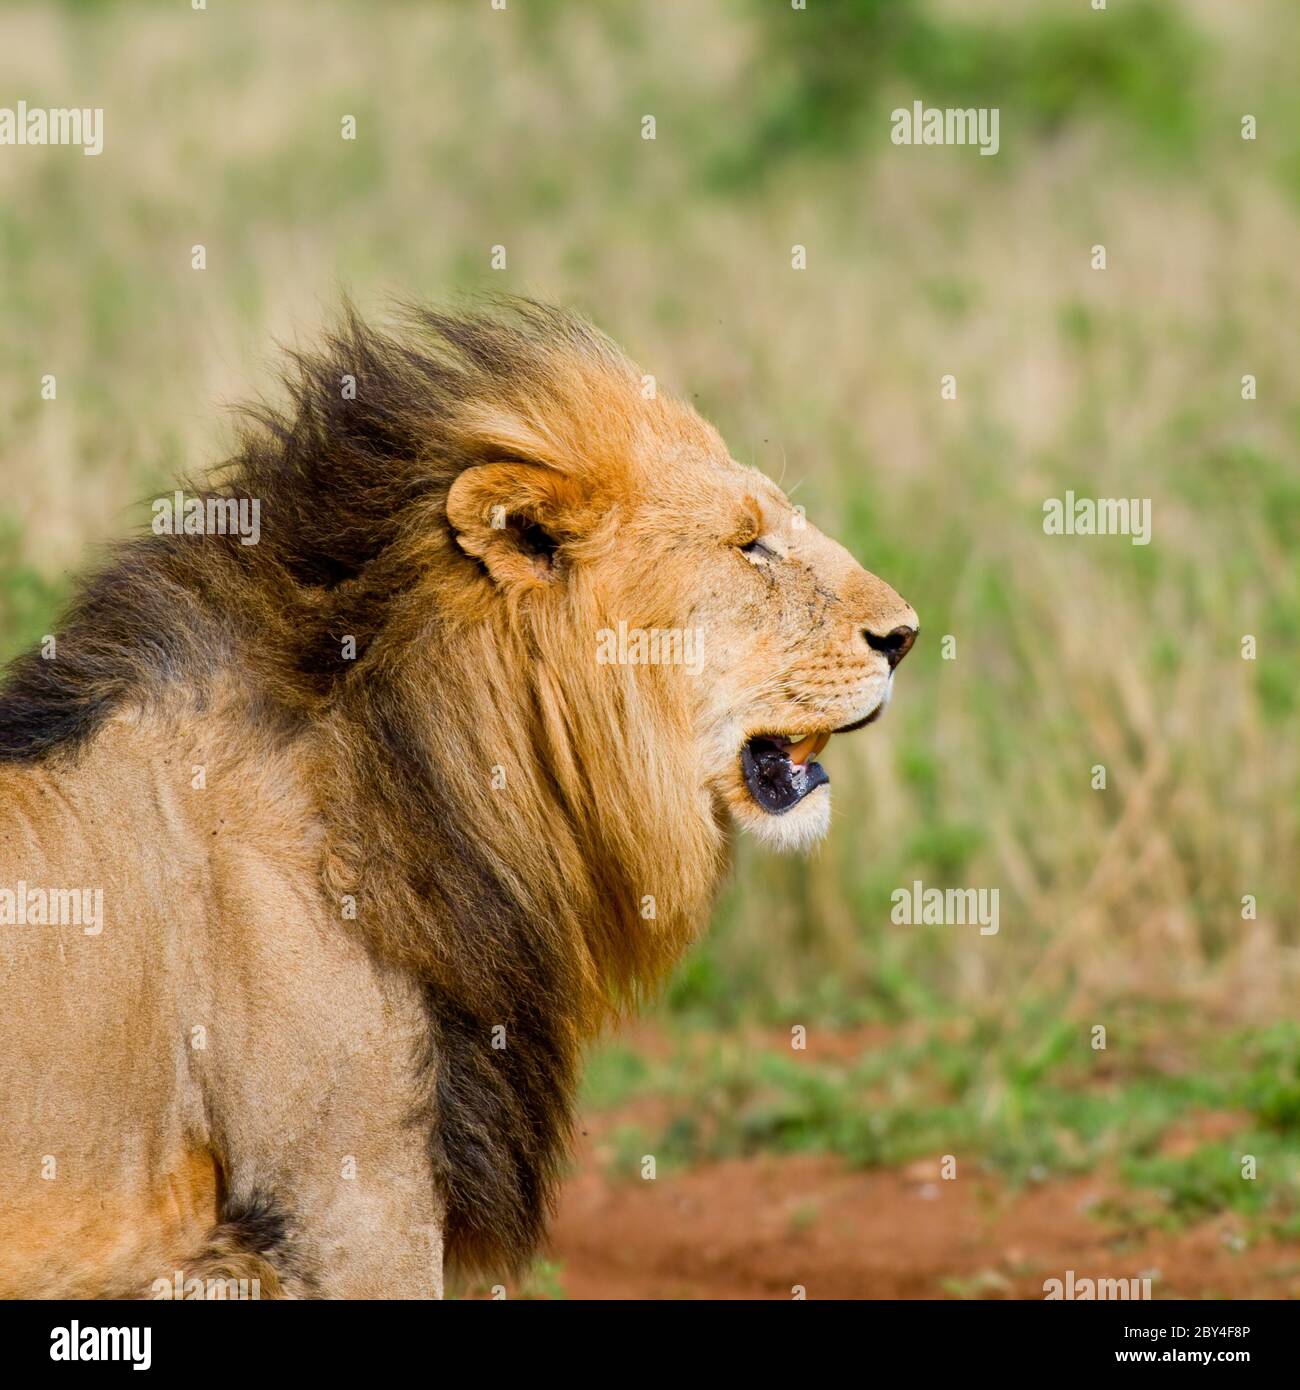 lion's head Stock Photo